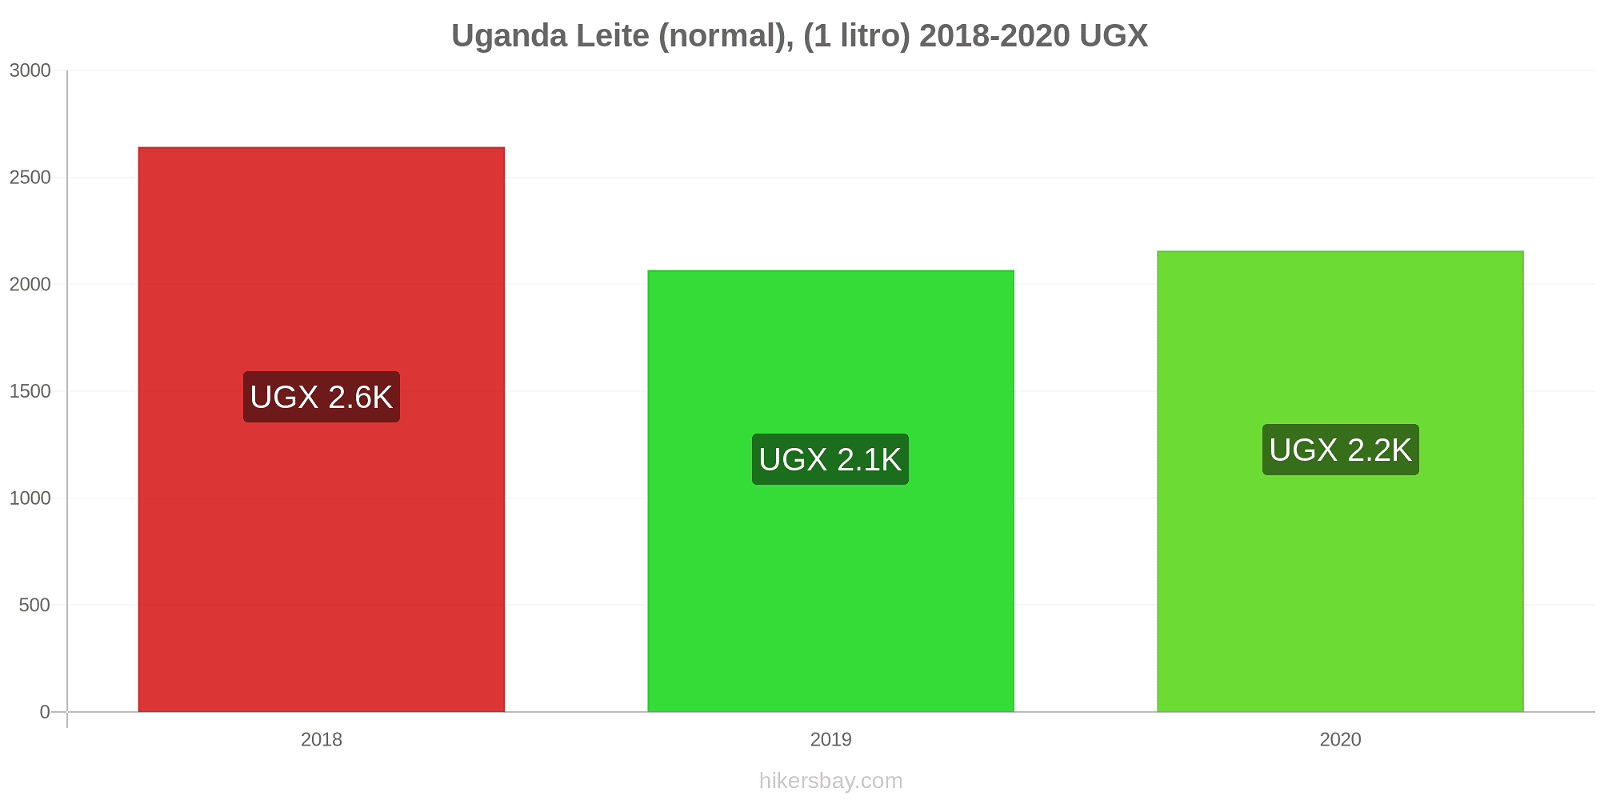 Uganda variação de preço (Regular), leite (1 litro) hikersbay.com